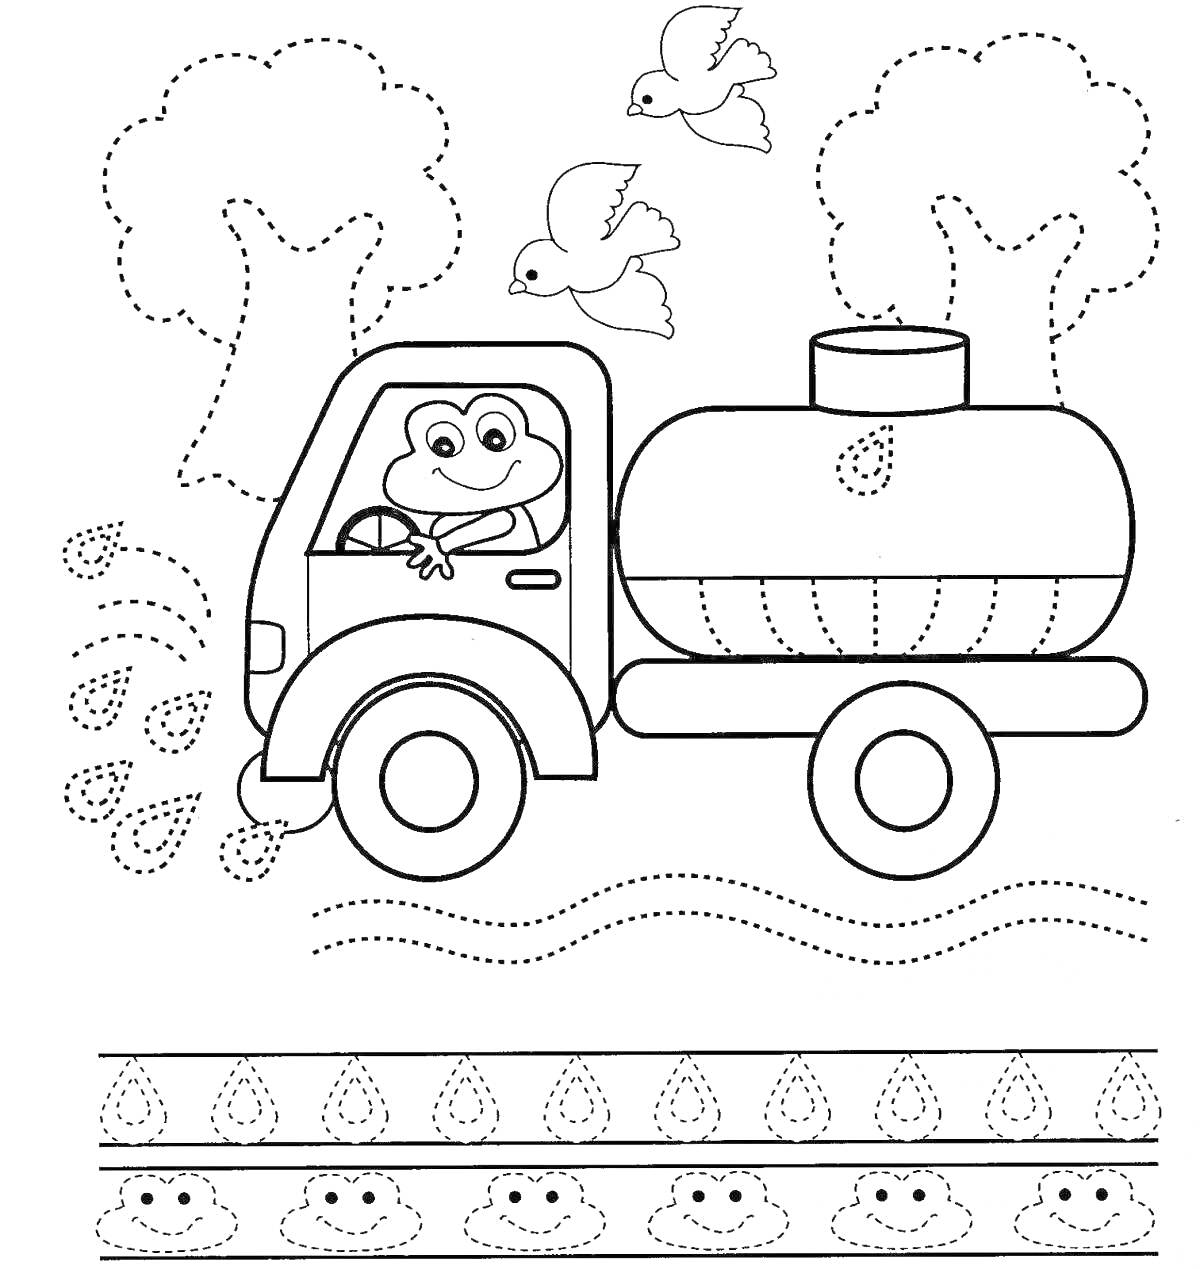 Раскраска Лягушка на поливочной машине с птицами, деревьями и узором капель воды в форме милых лиц